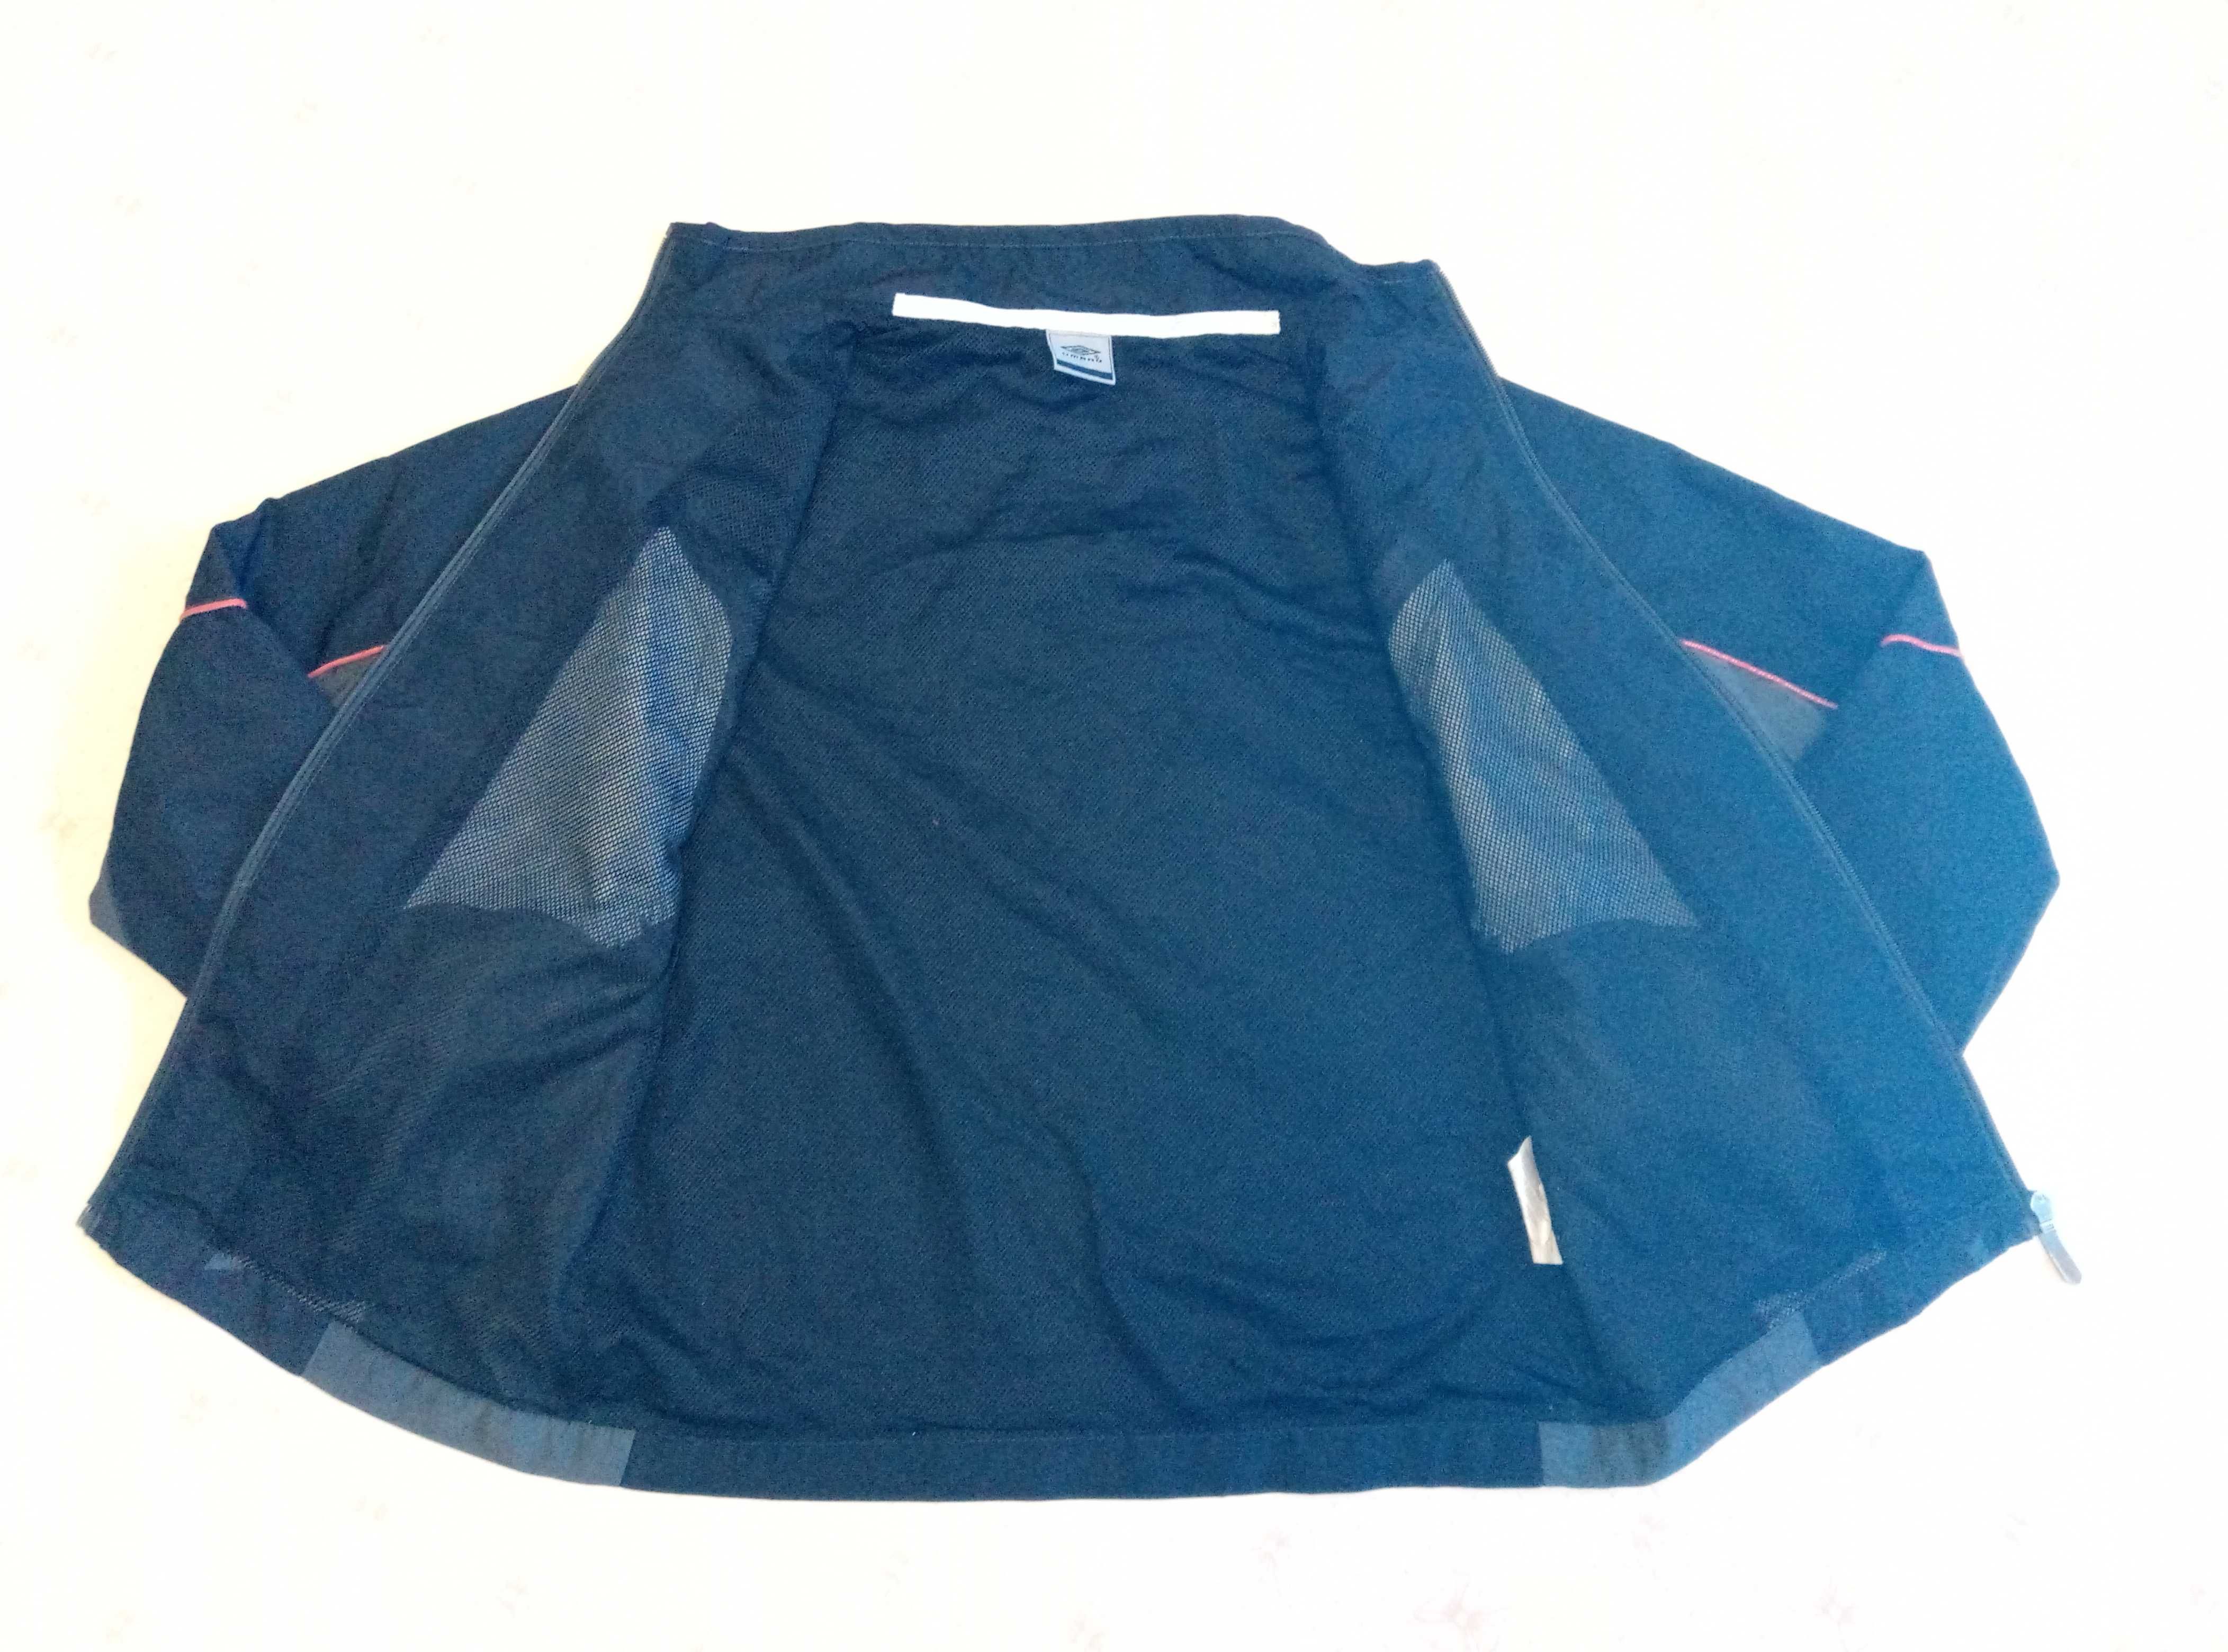 Курточка-Ветровка фирмы Umbro для мальчика 11 лет рост 146см